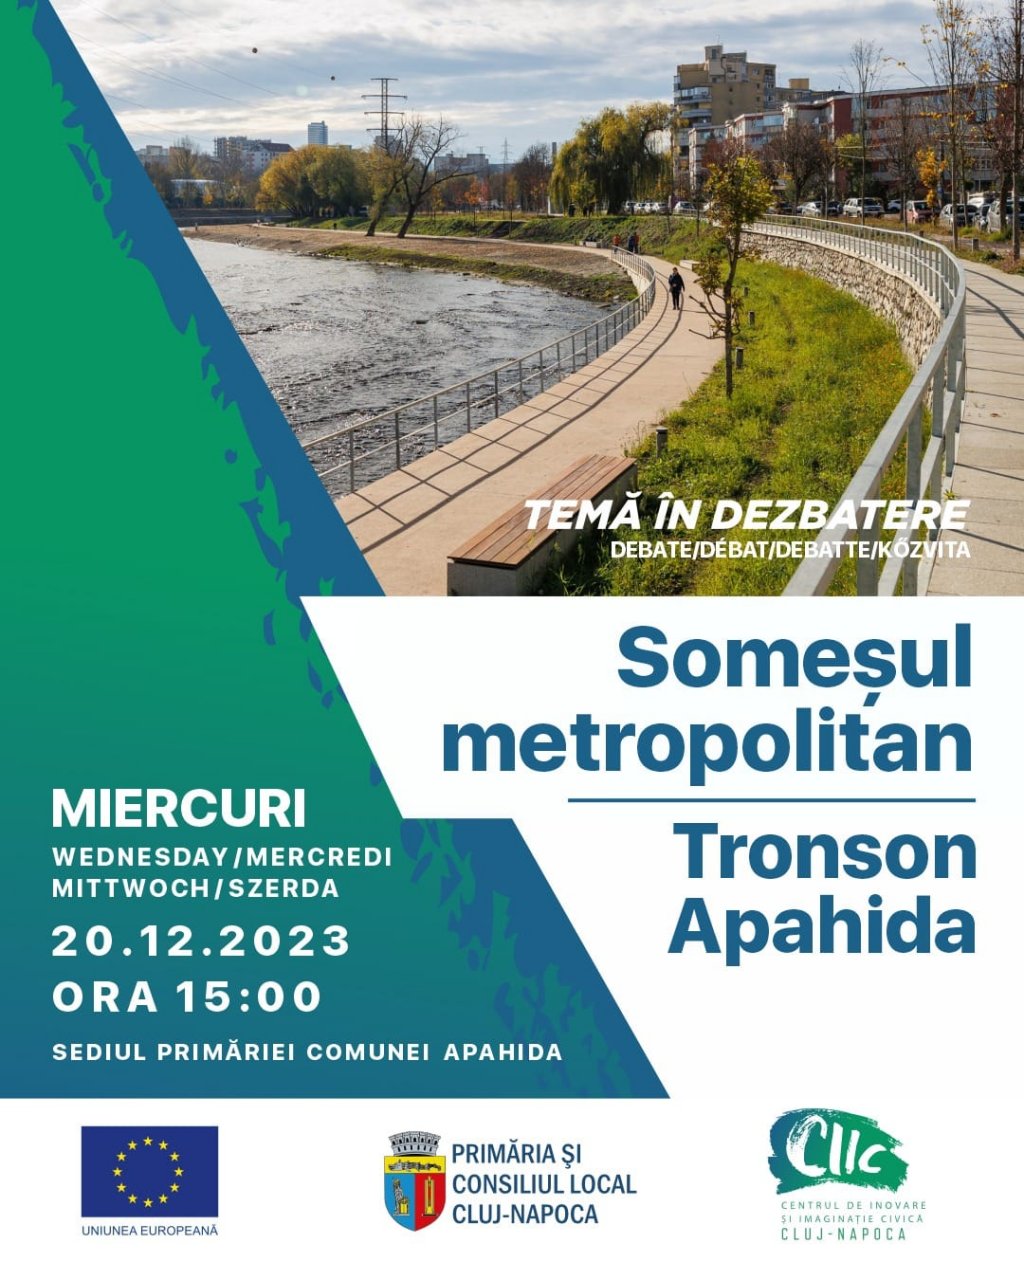 Miercuri, 20 decembrie 2023 – dezbatere CIIC la Apahida pe tema „Someșul metropolitan - Tronson Apahida”